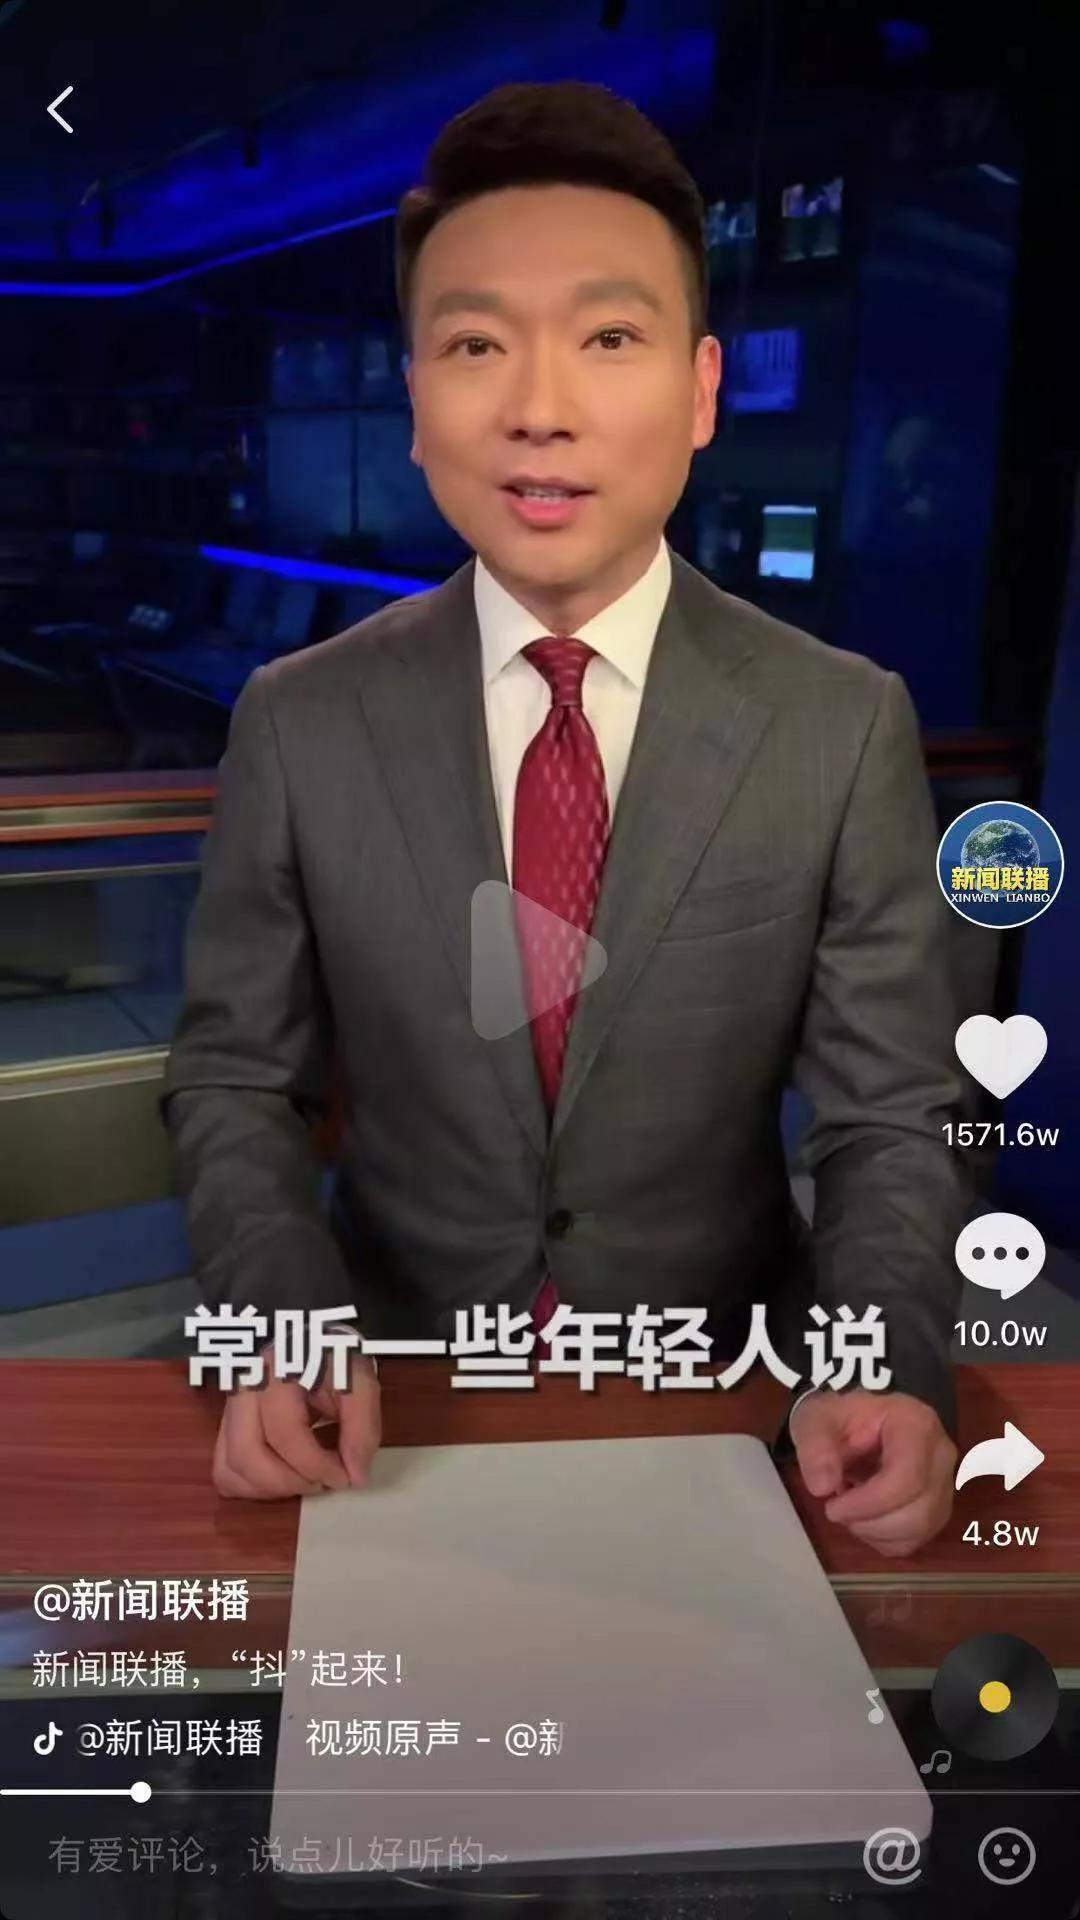 中国新闻联播模板图片图片-中国新闻联播模板图片模板-中国新闻联播模板图片海报图片制作-稿定设计